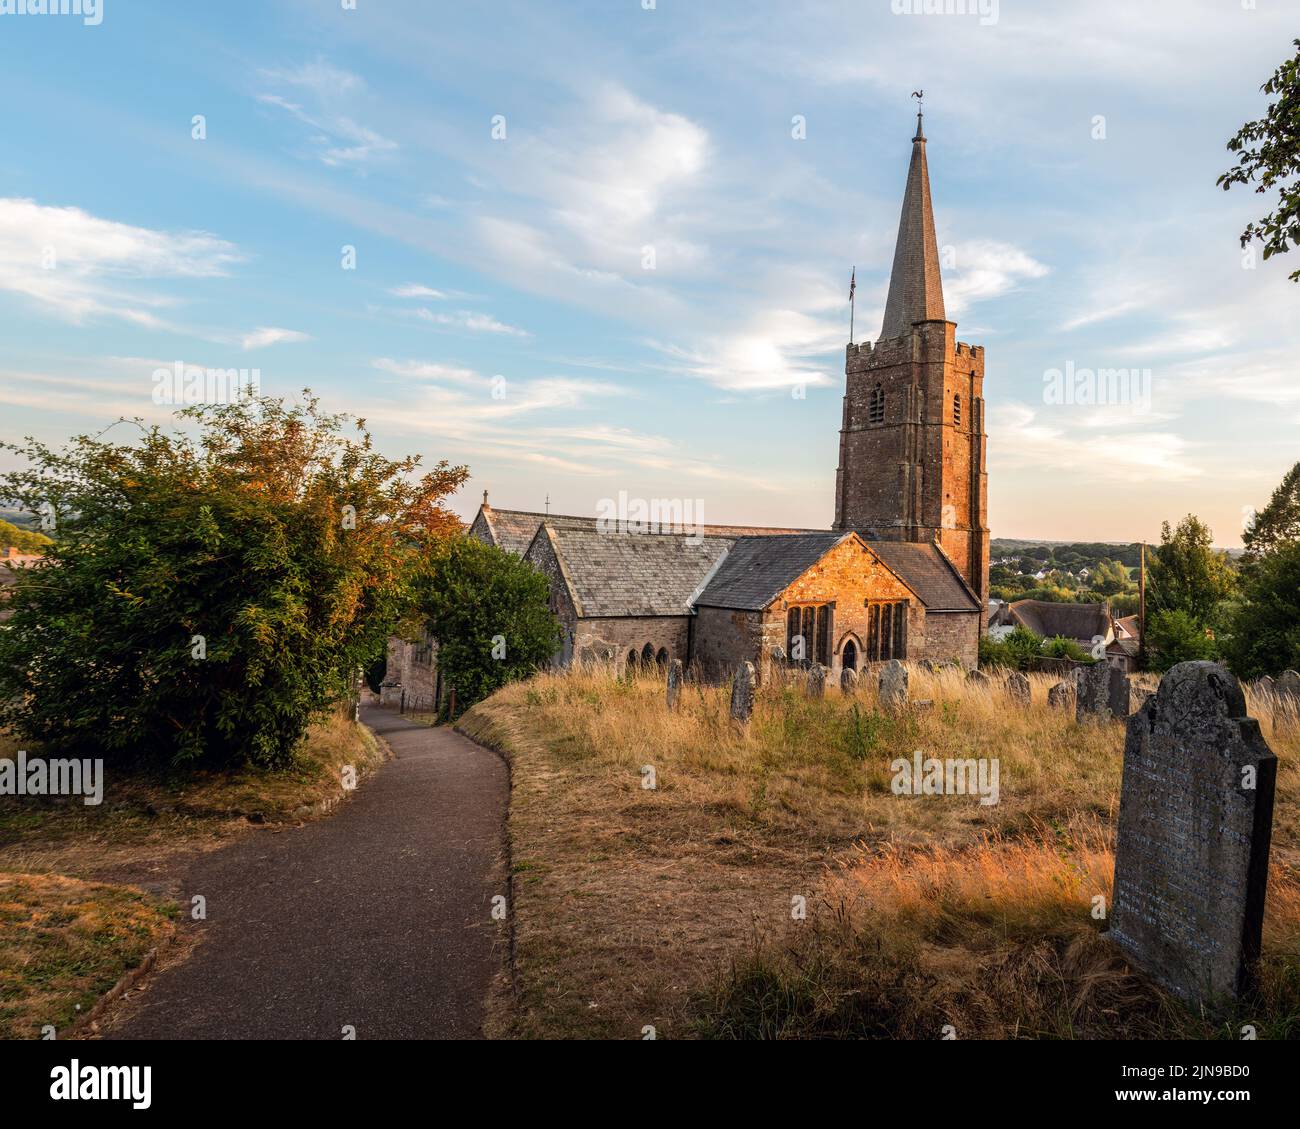 Hatherleigh church, in Devon, UK. Evening. Stock Photo